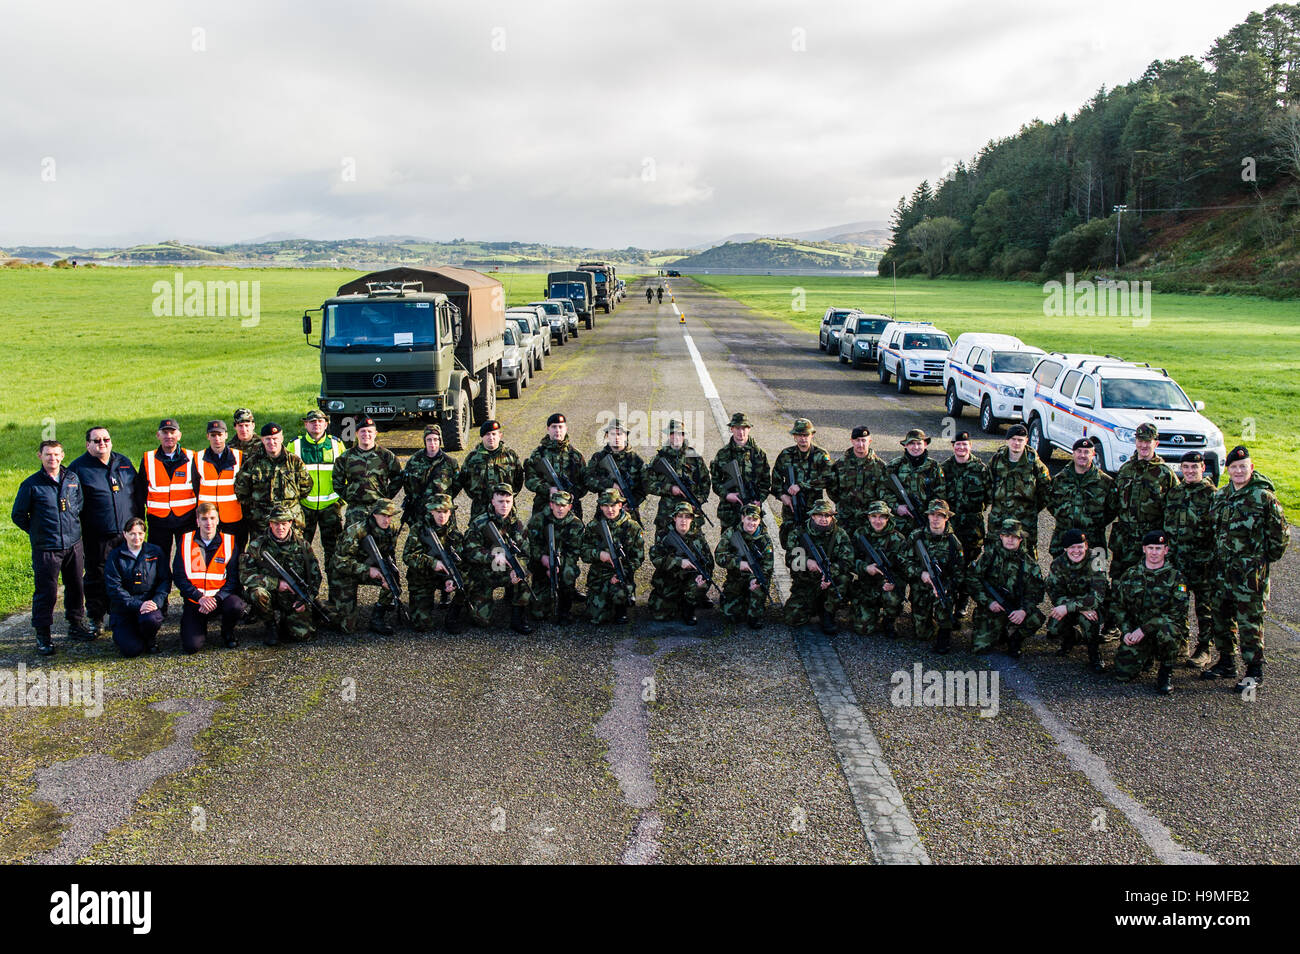 L'armée irlandaise et de la défense civile posent pour une photo de groupe après un exercice, à l'atterrissage, Bantry Bantry, West Cork, Irlande. Banque D'Images